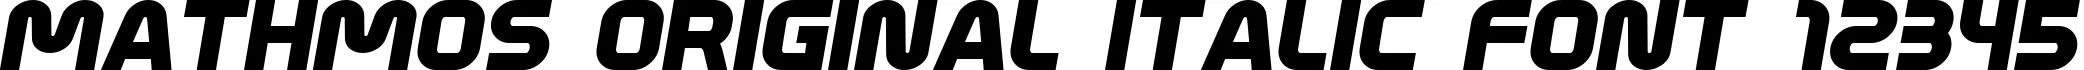 Dynamic Mathmos Original Italic Font Preview https://safirsoft.com